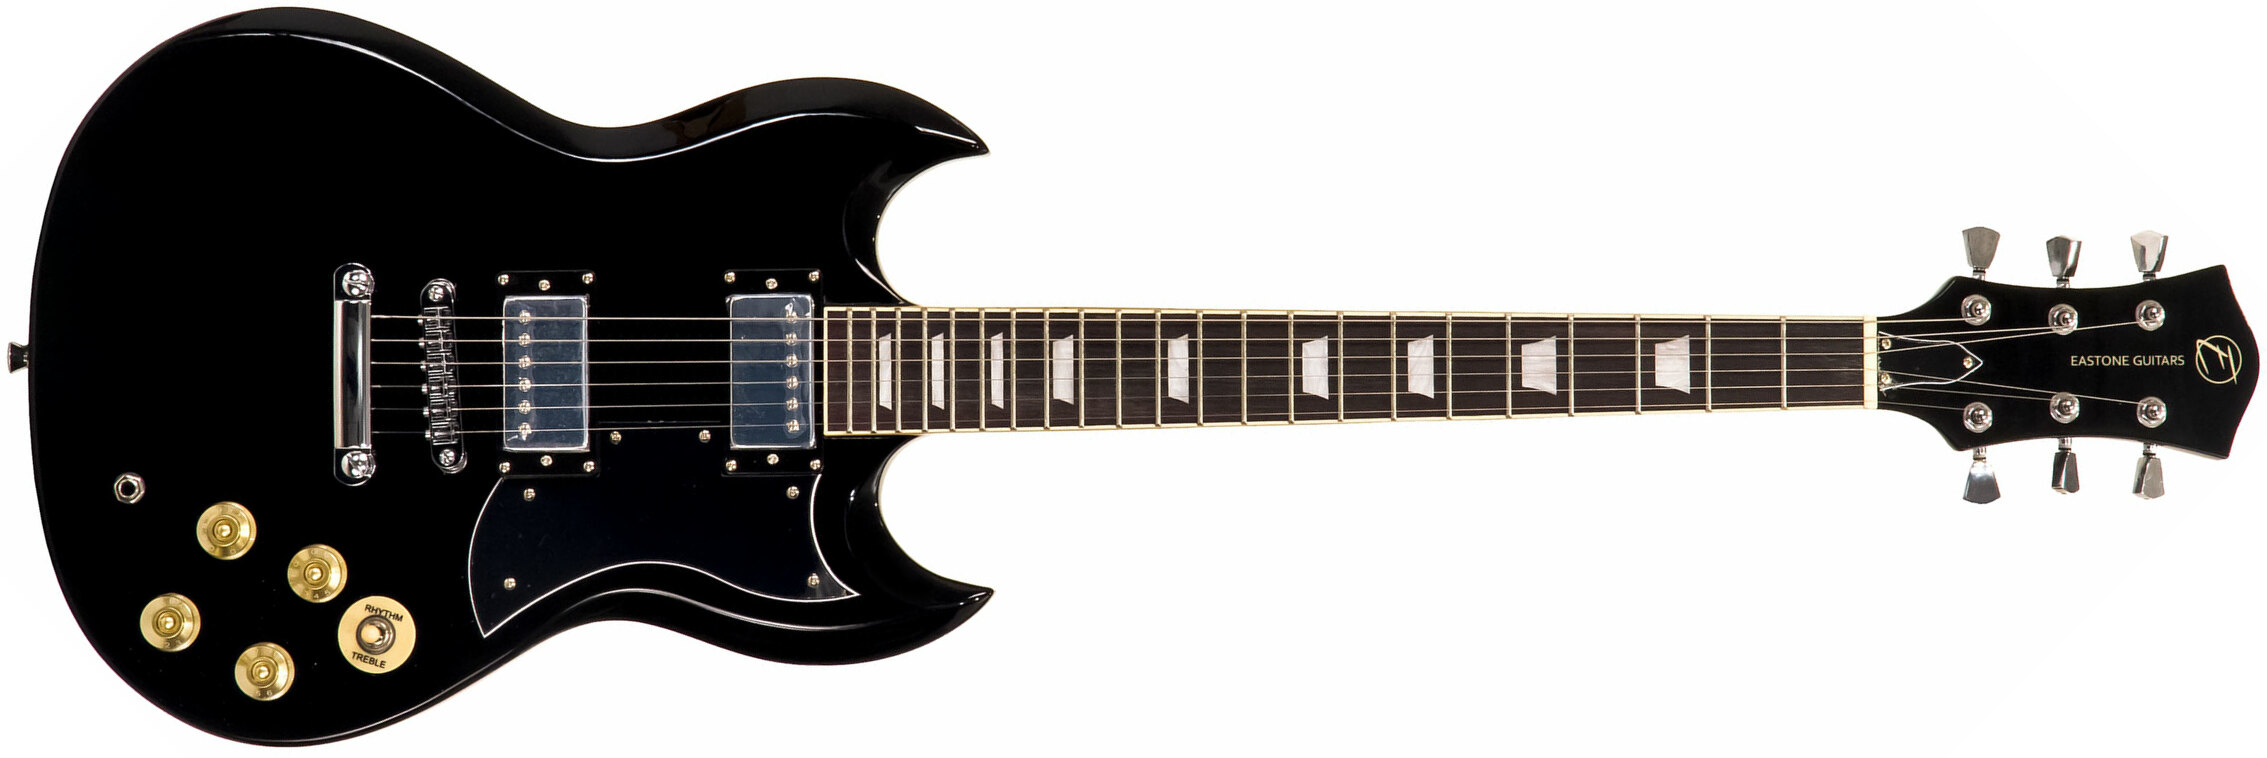 Eastone Sdc70 Hh Ht Pur - Black - Guitare Électrique RÉtro Rock - Main picture